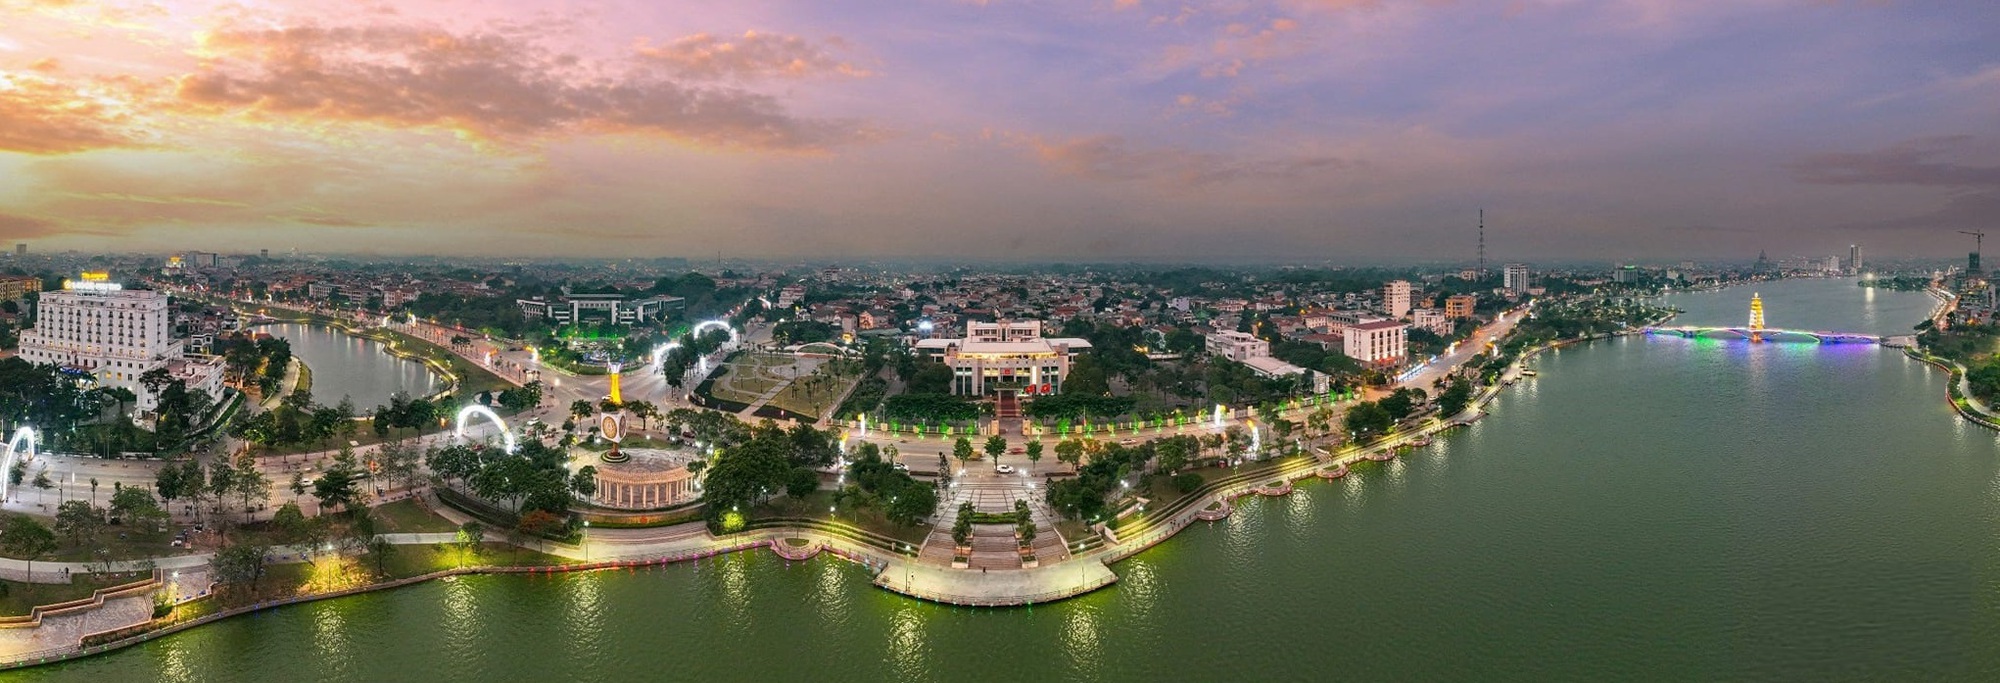 Phương án sáp nhập xã, huyện mới nhất giai đoạn 2023 - 2025 tại Phú Thọ như thế nào? - Ảnh 1.